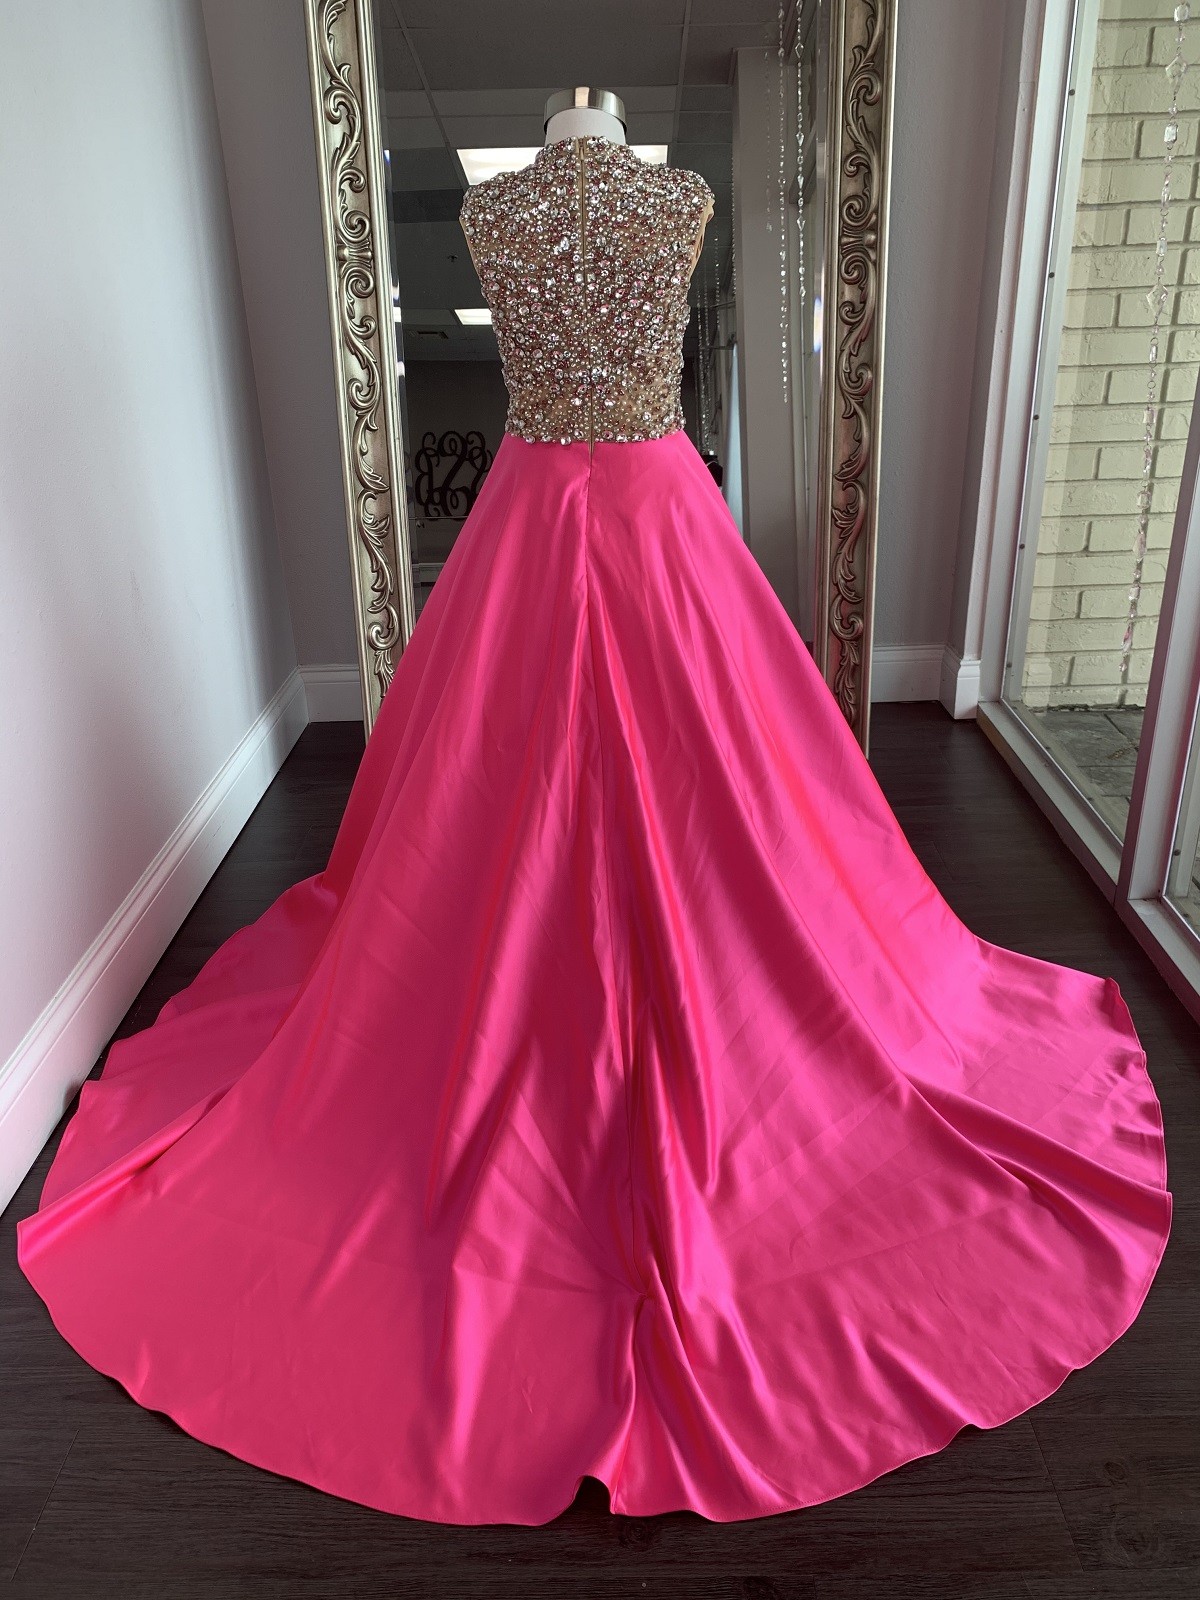 ASHLEY Lauren Kids Dress 8030 Girls Pageant Dress Hot Pink Size 10 ...